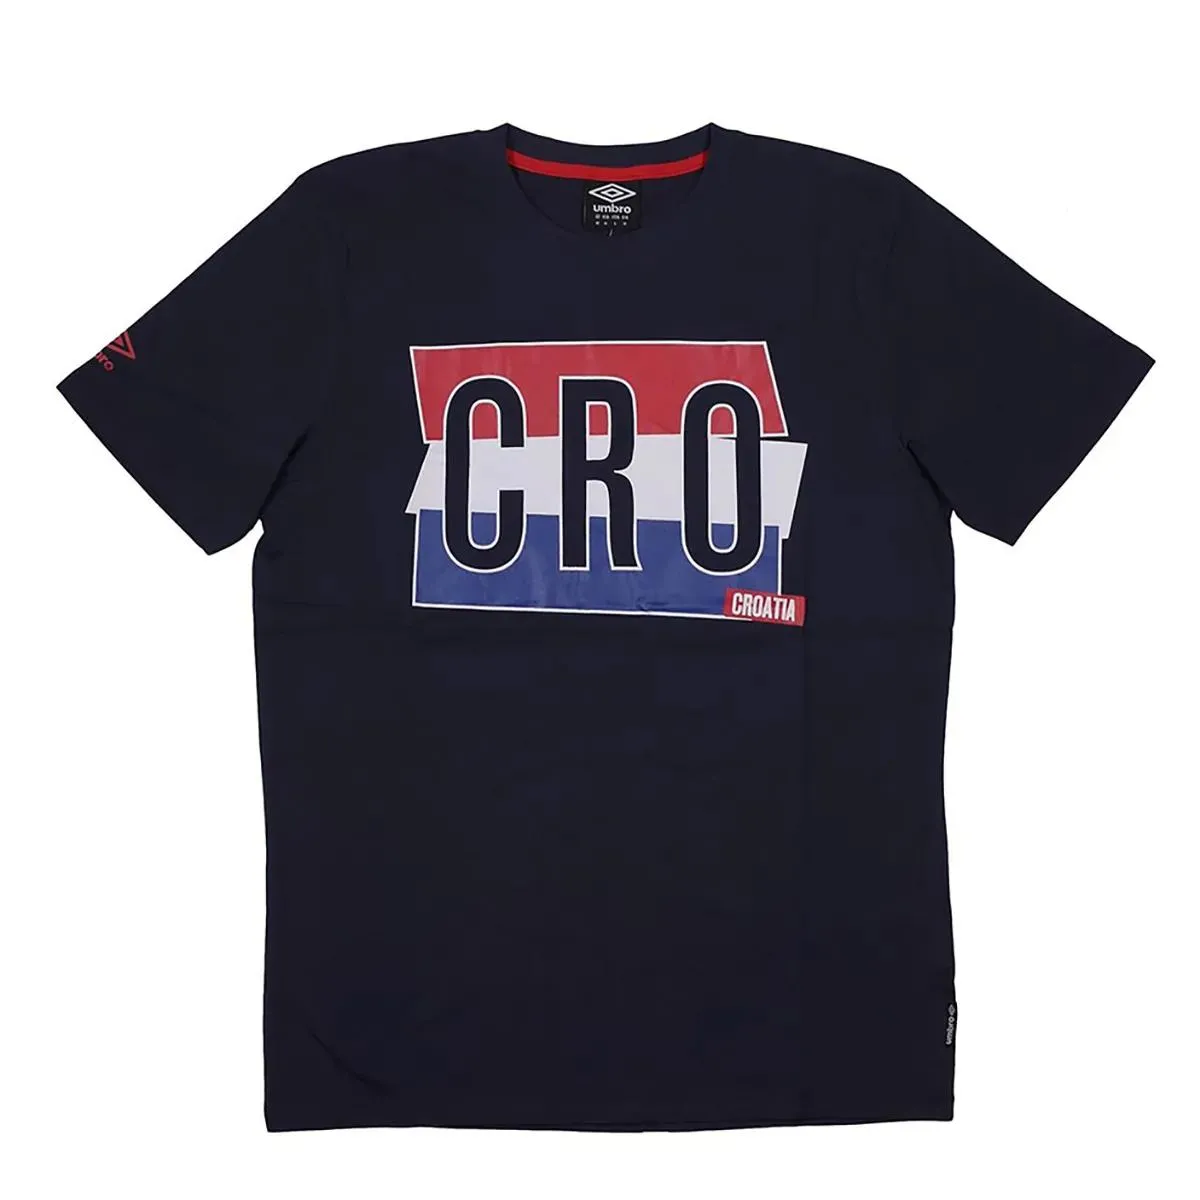 Umbro T-shirt TEE SHIRT CROATIA 